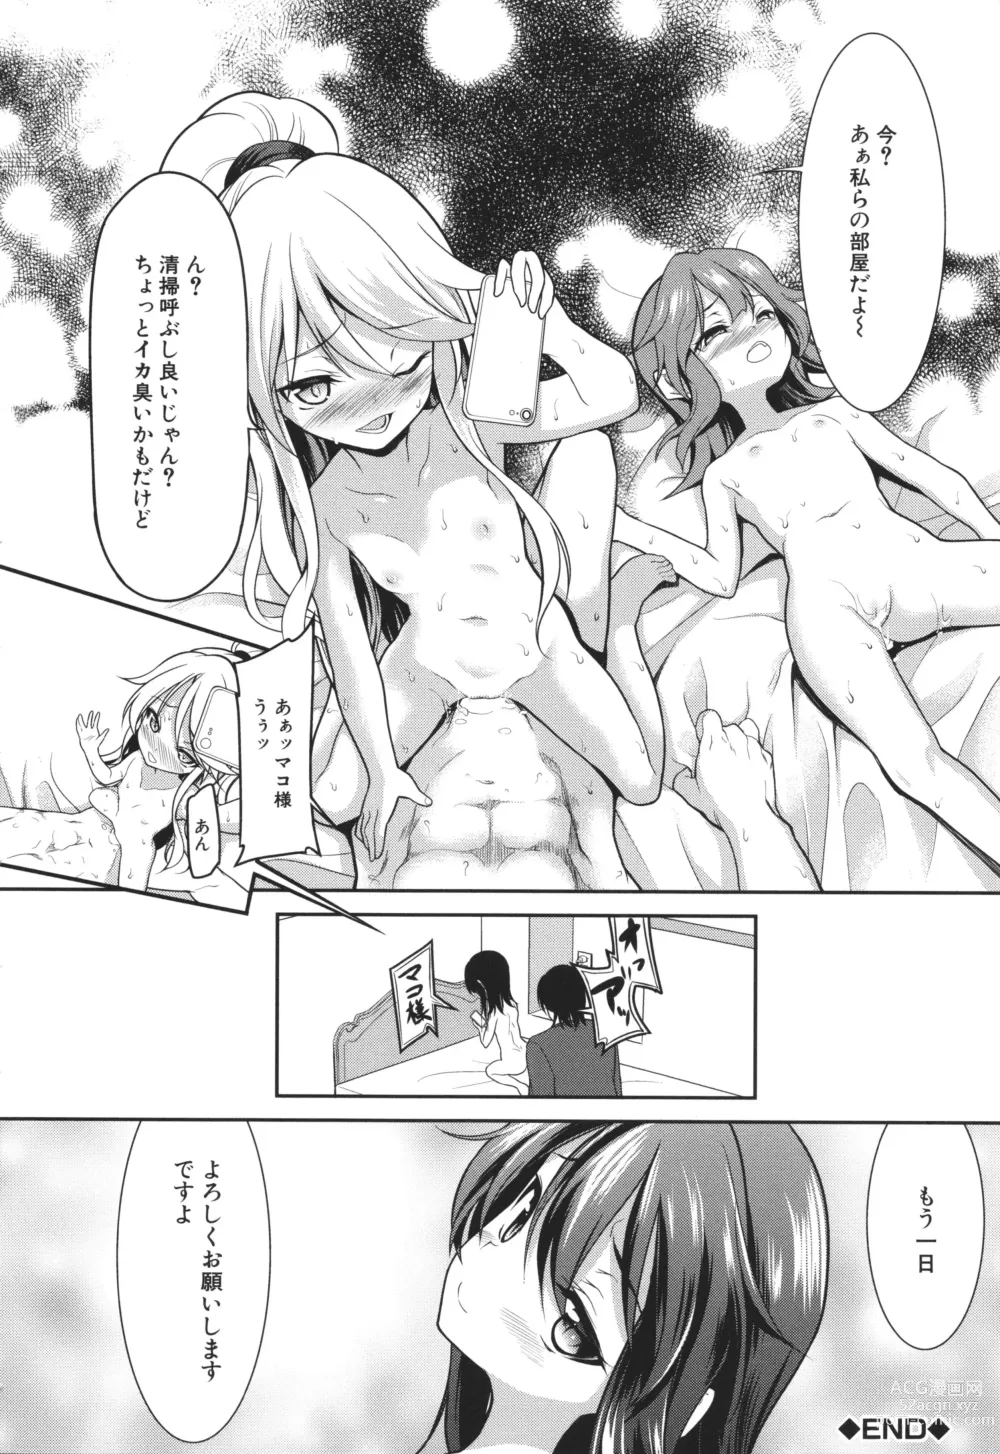 Page 193 of manga Chibikko Gakuen Soapland